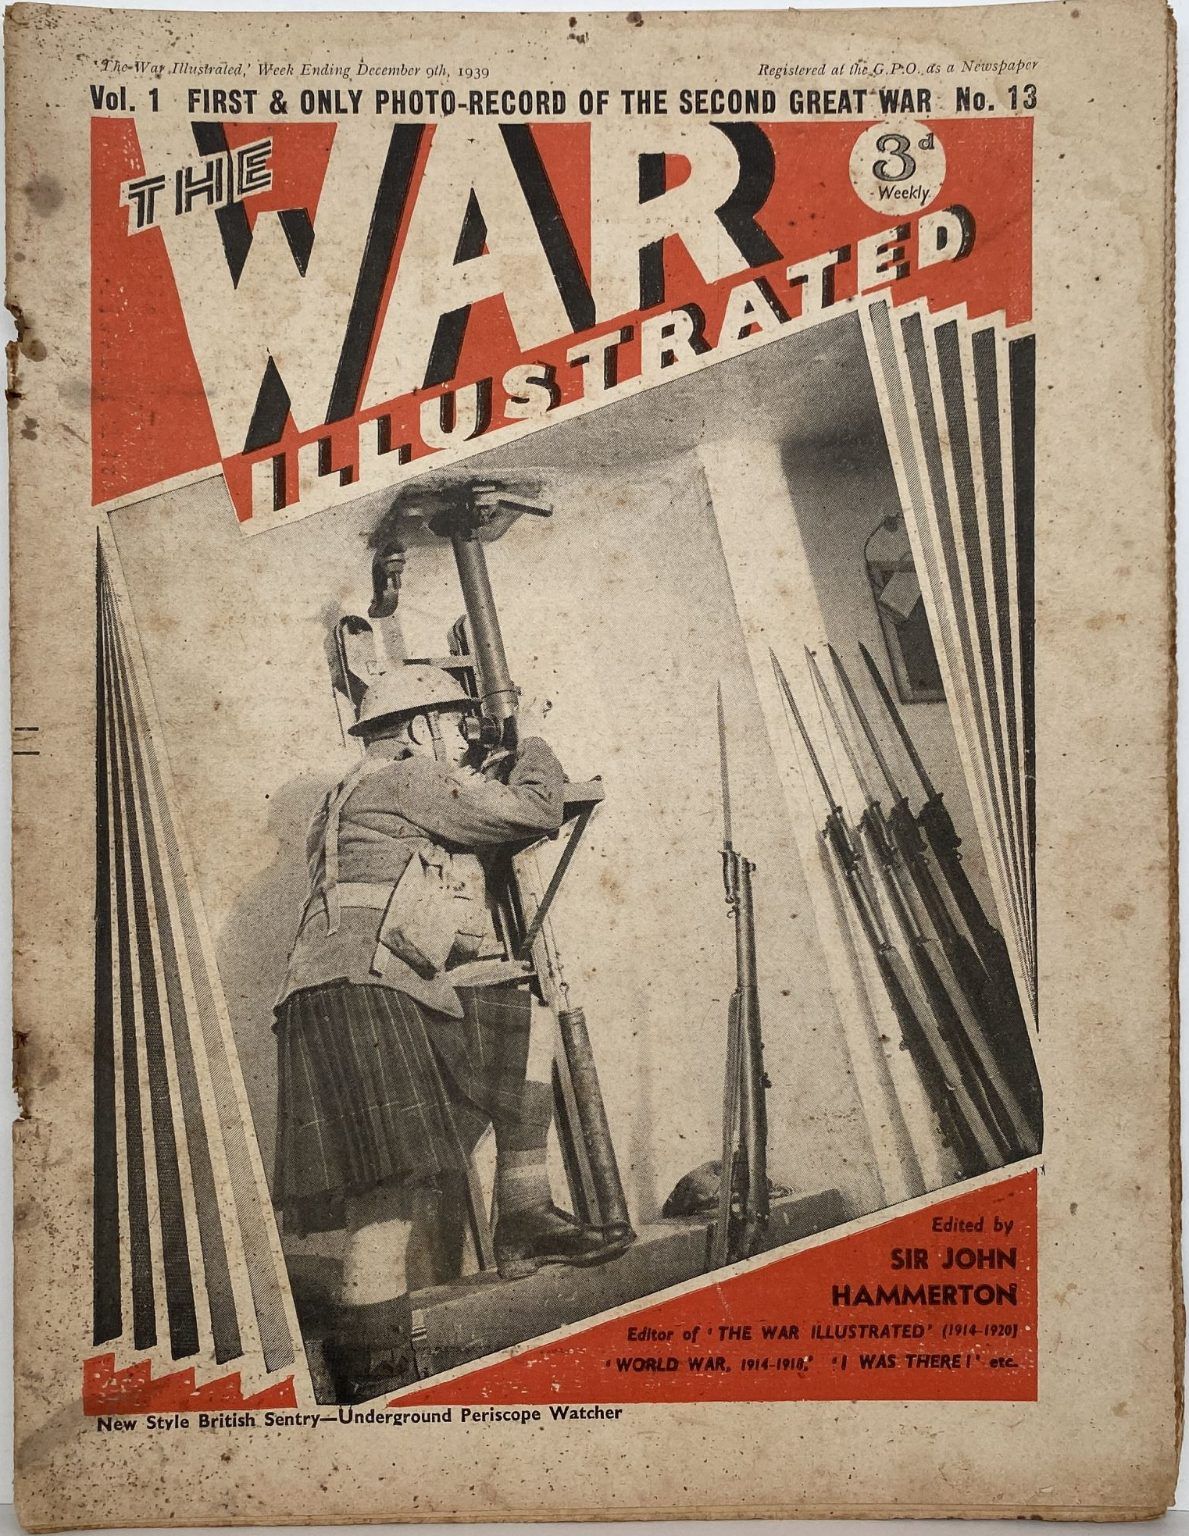 THE WAR ILLUSTRATED - Vol 1, No 13, 9th Dec 1939